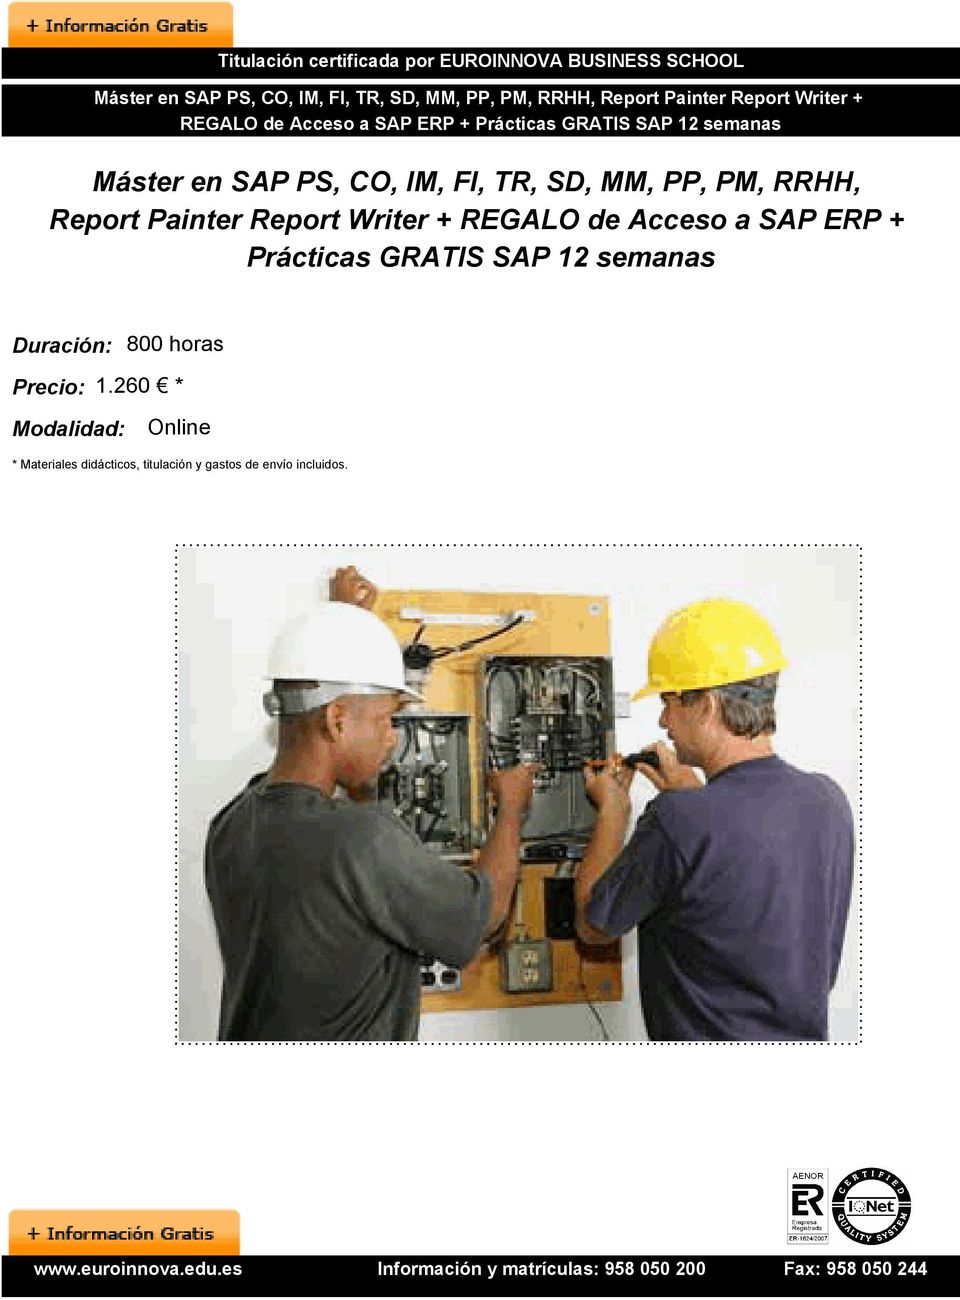 Report Painter Report Writer + REGALO de Acceso a SAP ERP + Prácticas GRATIS SAP 12 semanas Duración: